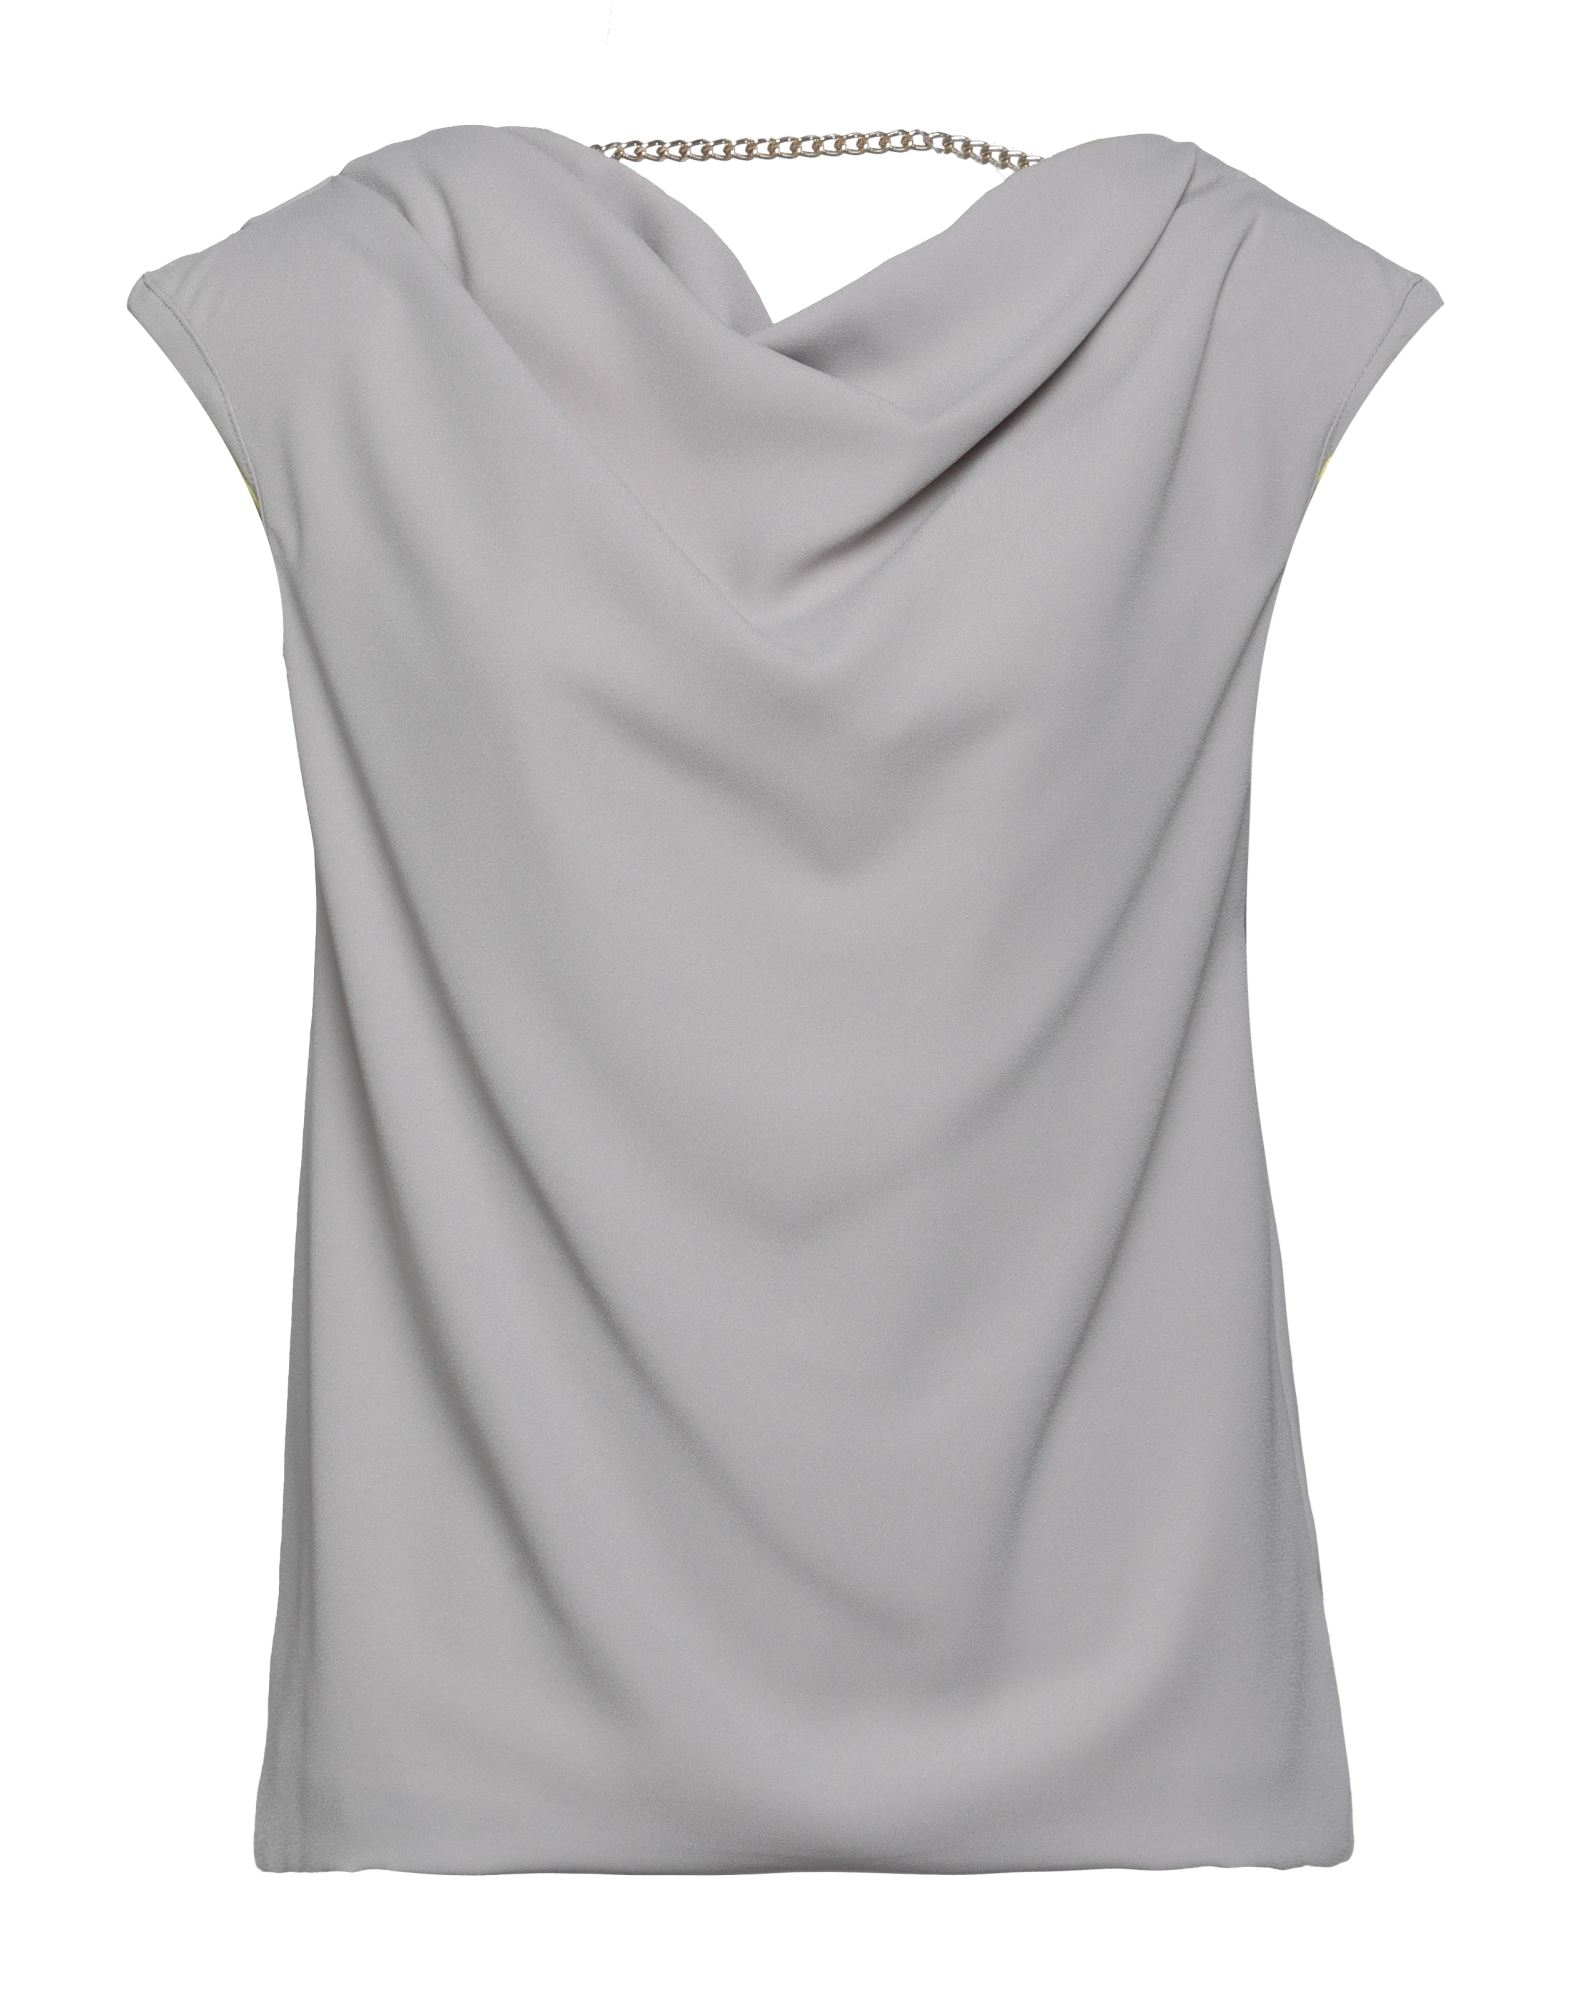 Les Bourdelles Des Garçons Woman Top Grey Size 4 Polyester